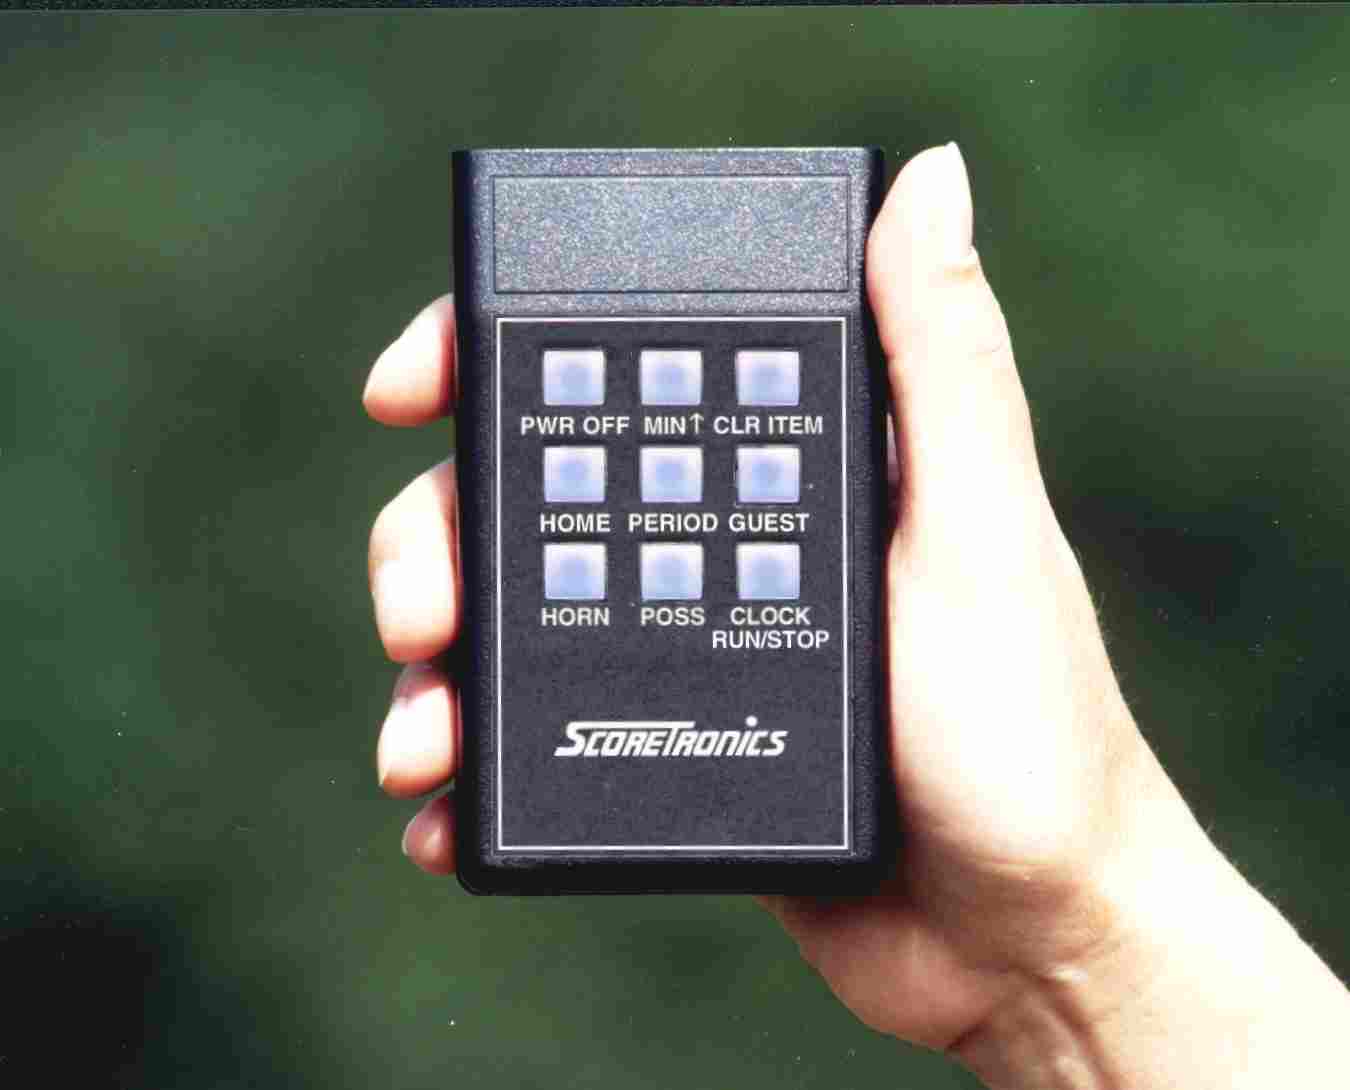 Standard remote control for portable scoreboard.